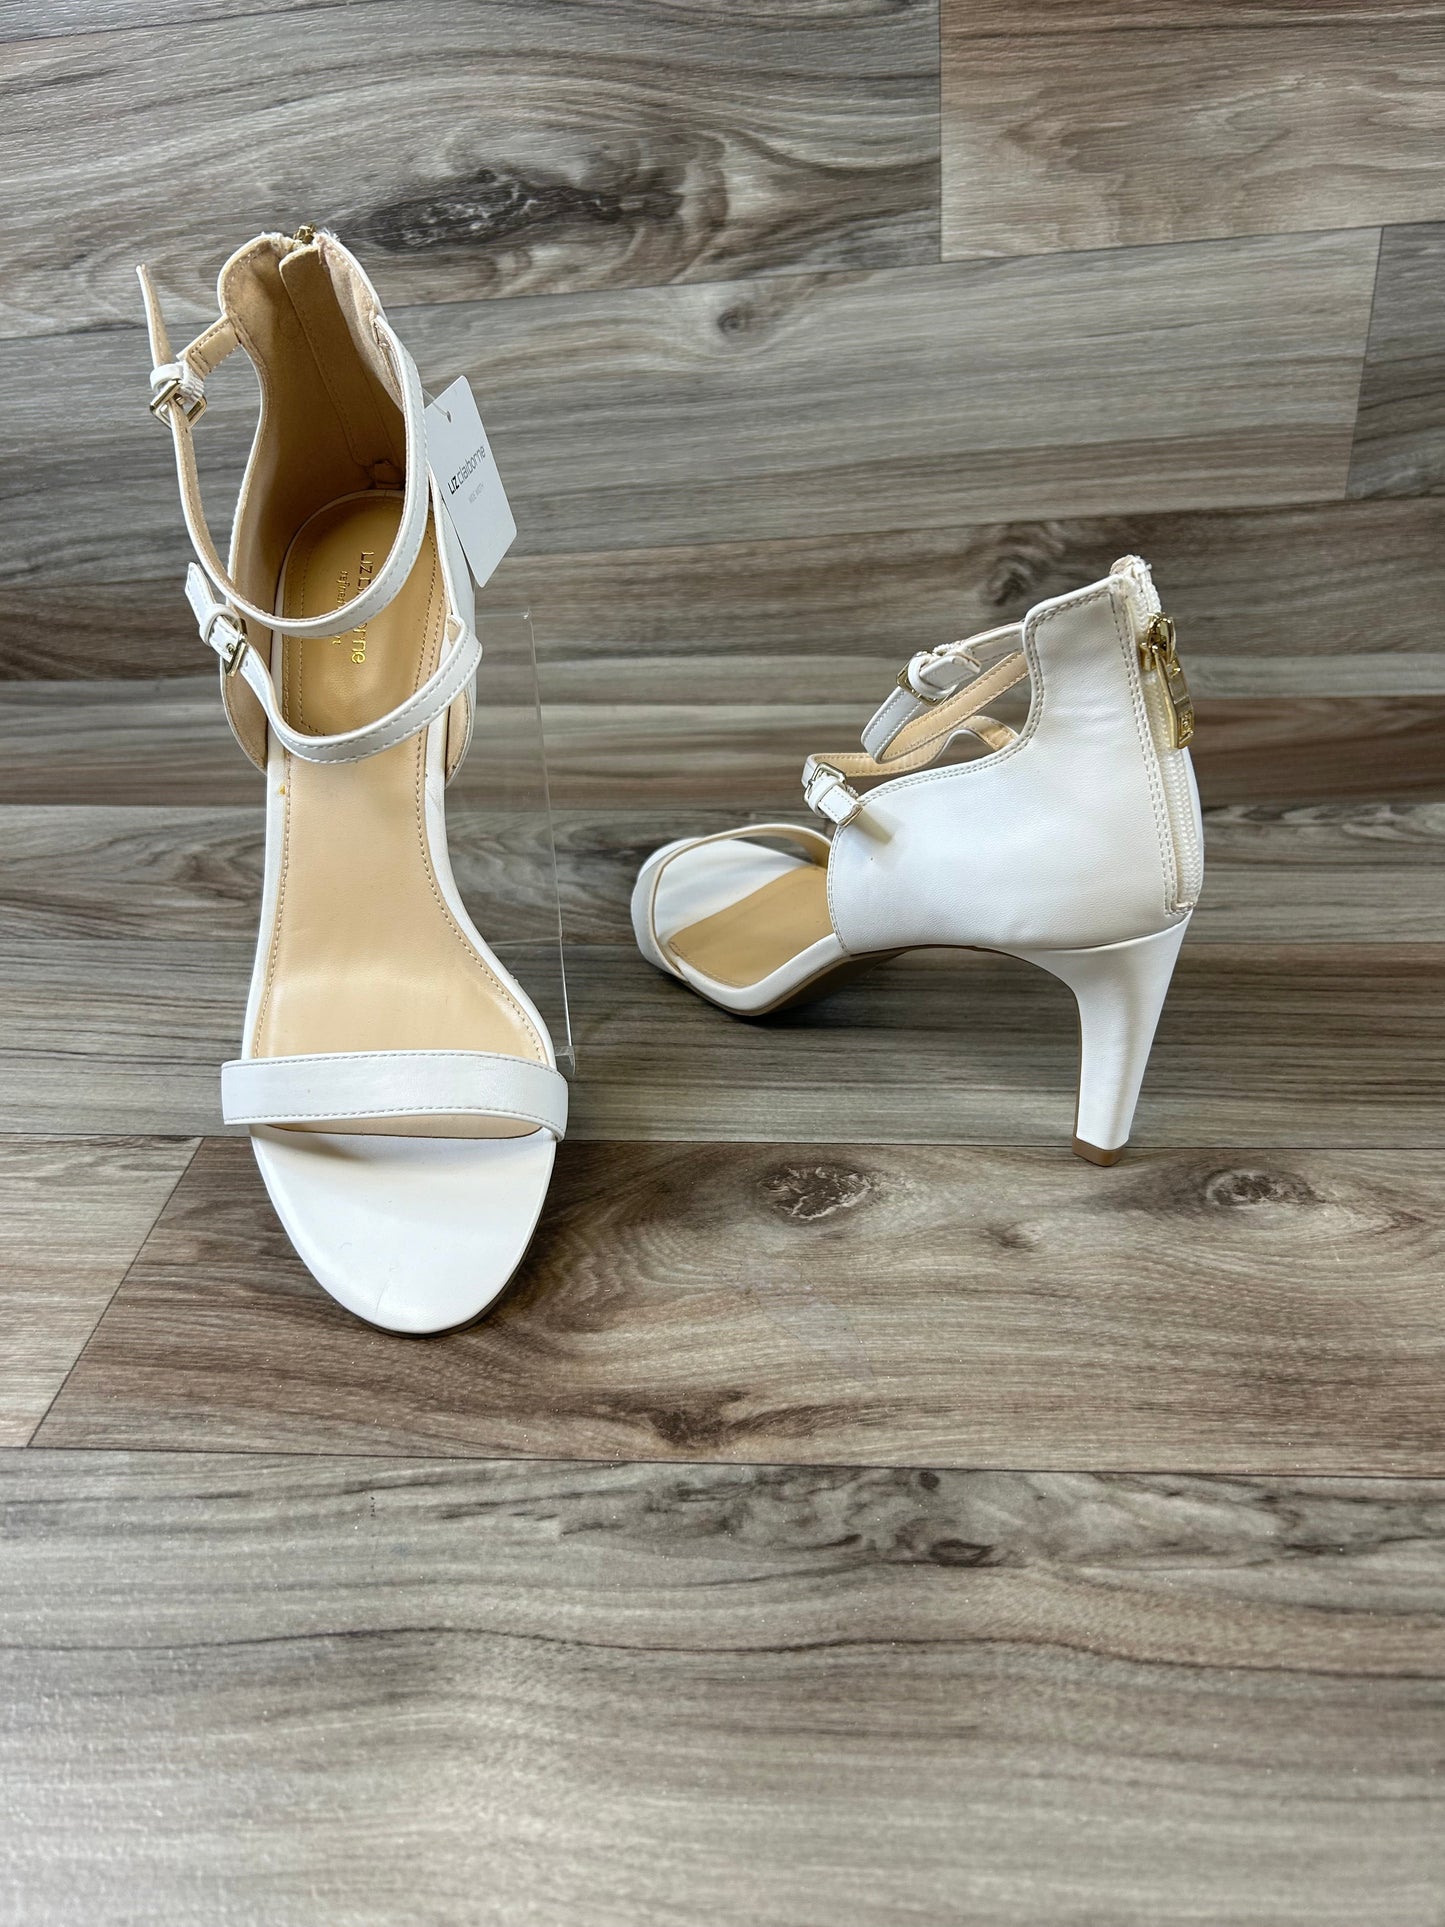 Sandals Heels Stiletto By Liz Claiborne  Size: 11